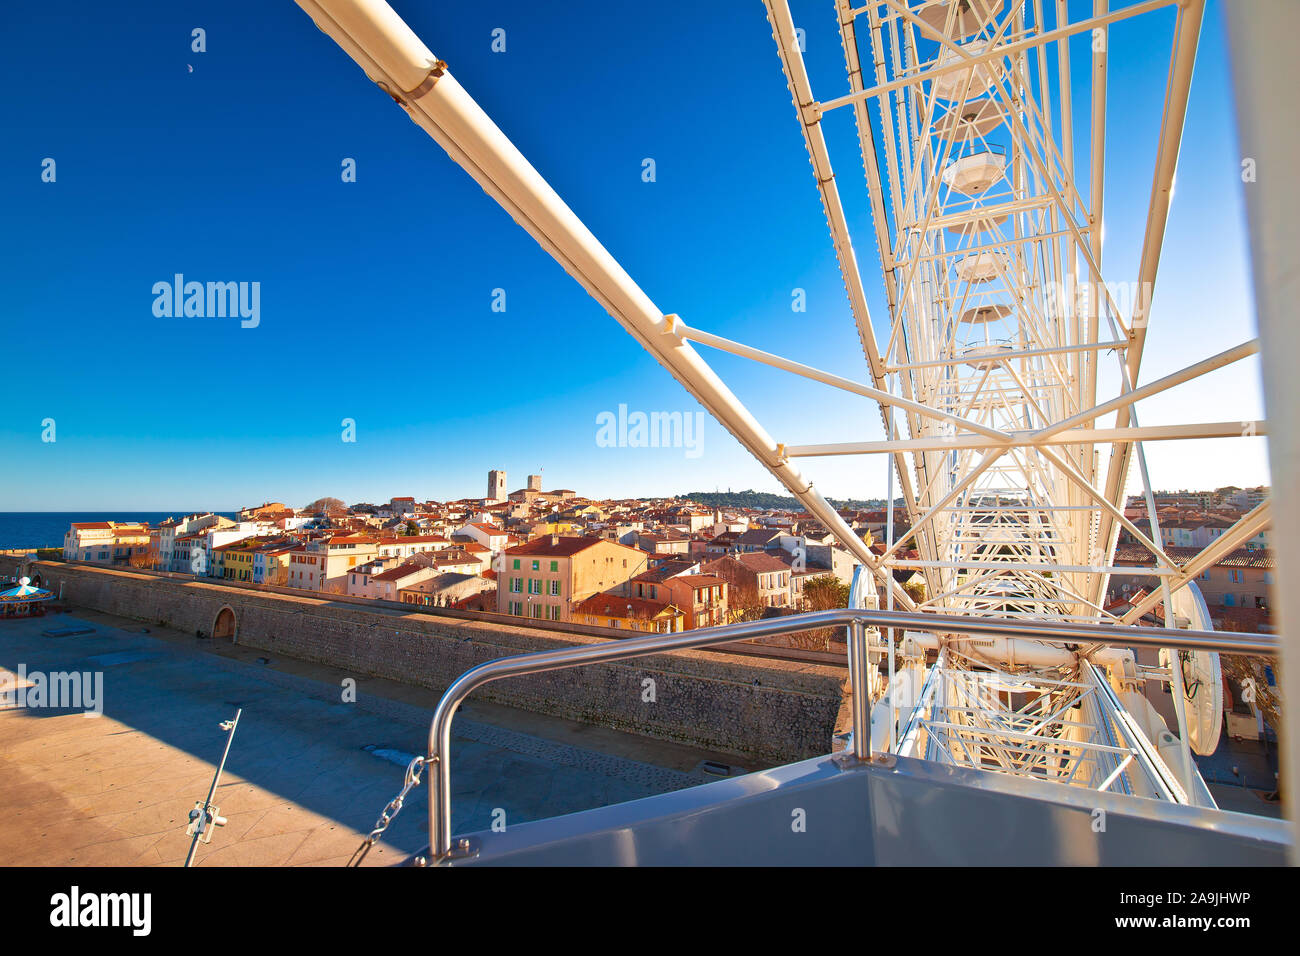 Antibes. Storico riviera francese la città vecchia di Antibes vista dalla ruota panoramica Ferris, famosa destinazione in Costa Azzurra, Francia Foto Stock